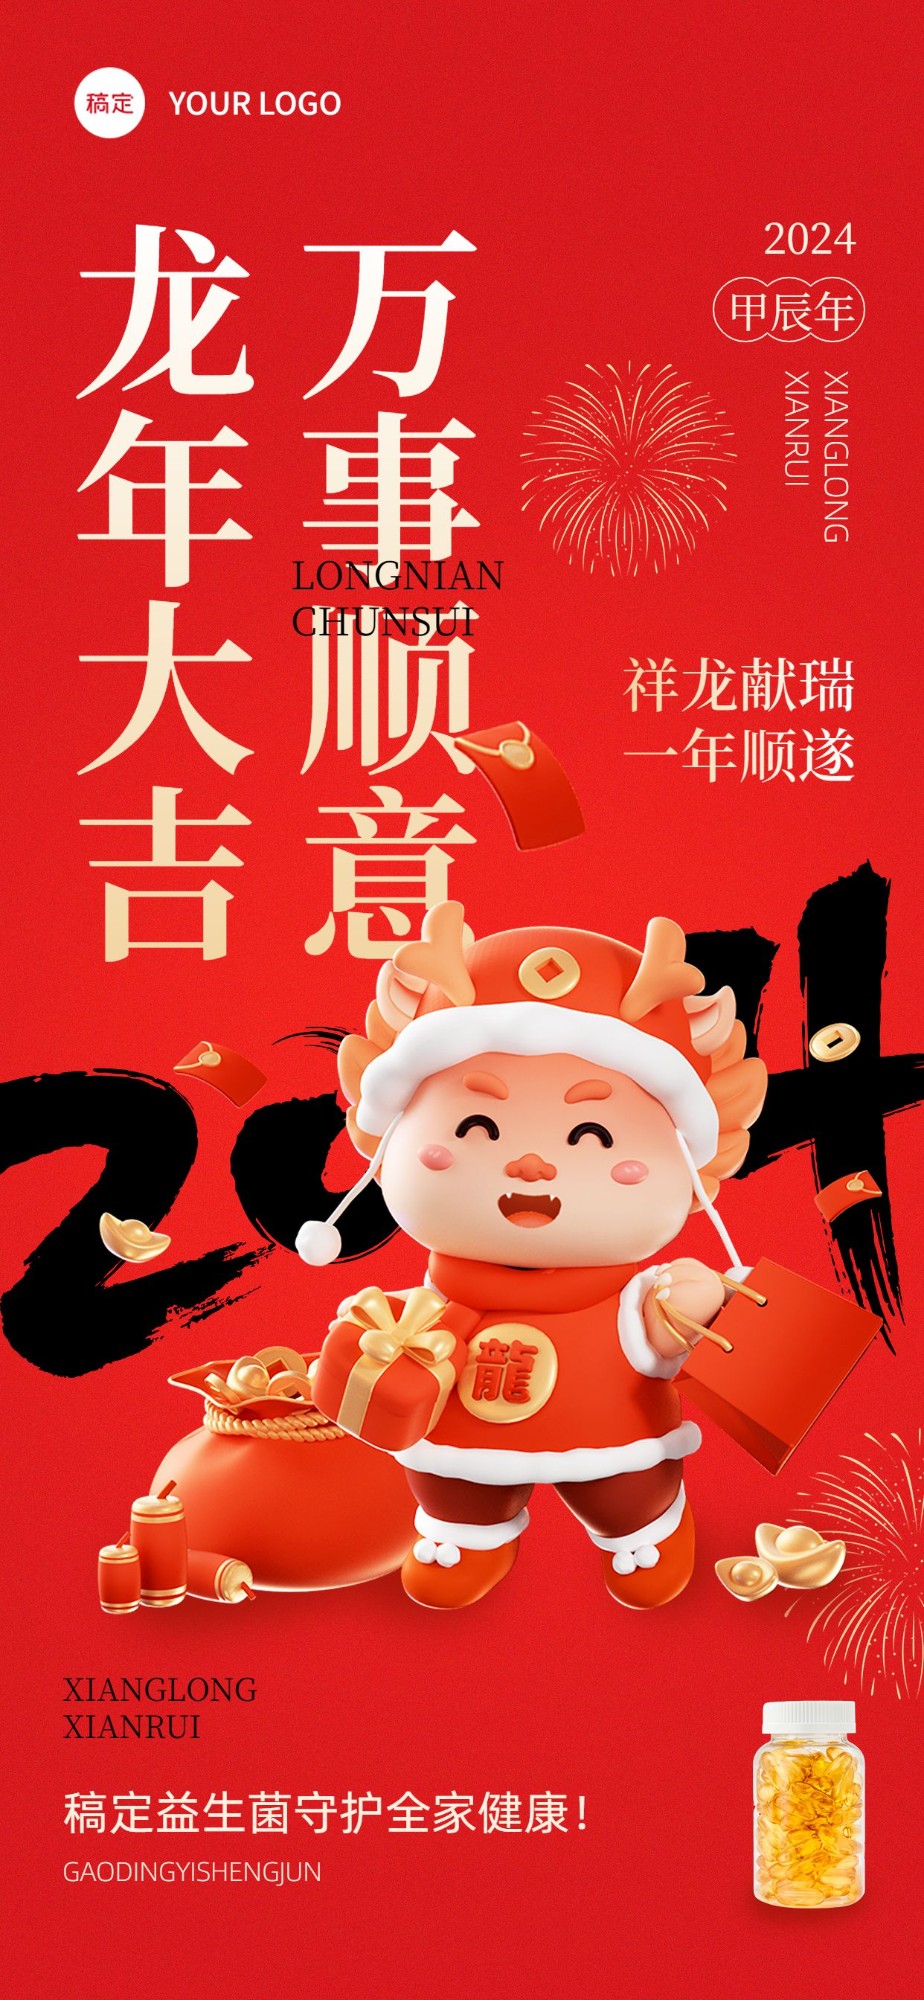 春节龙年节日祝福产品展示全屏竖版海报